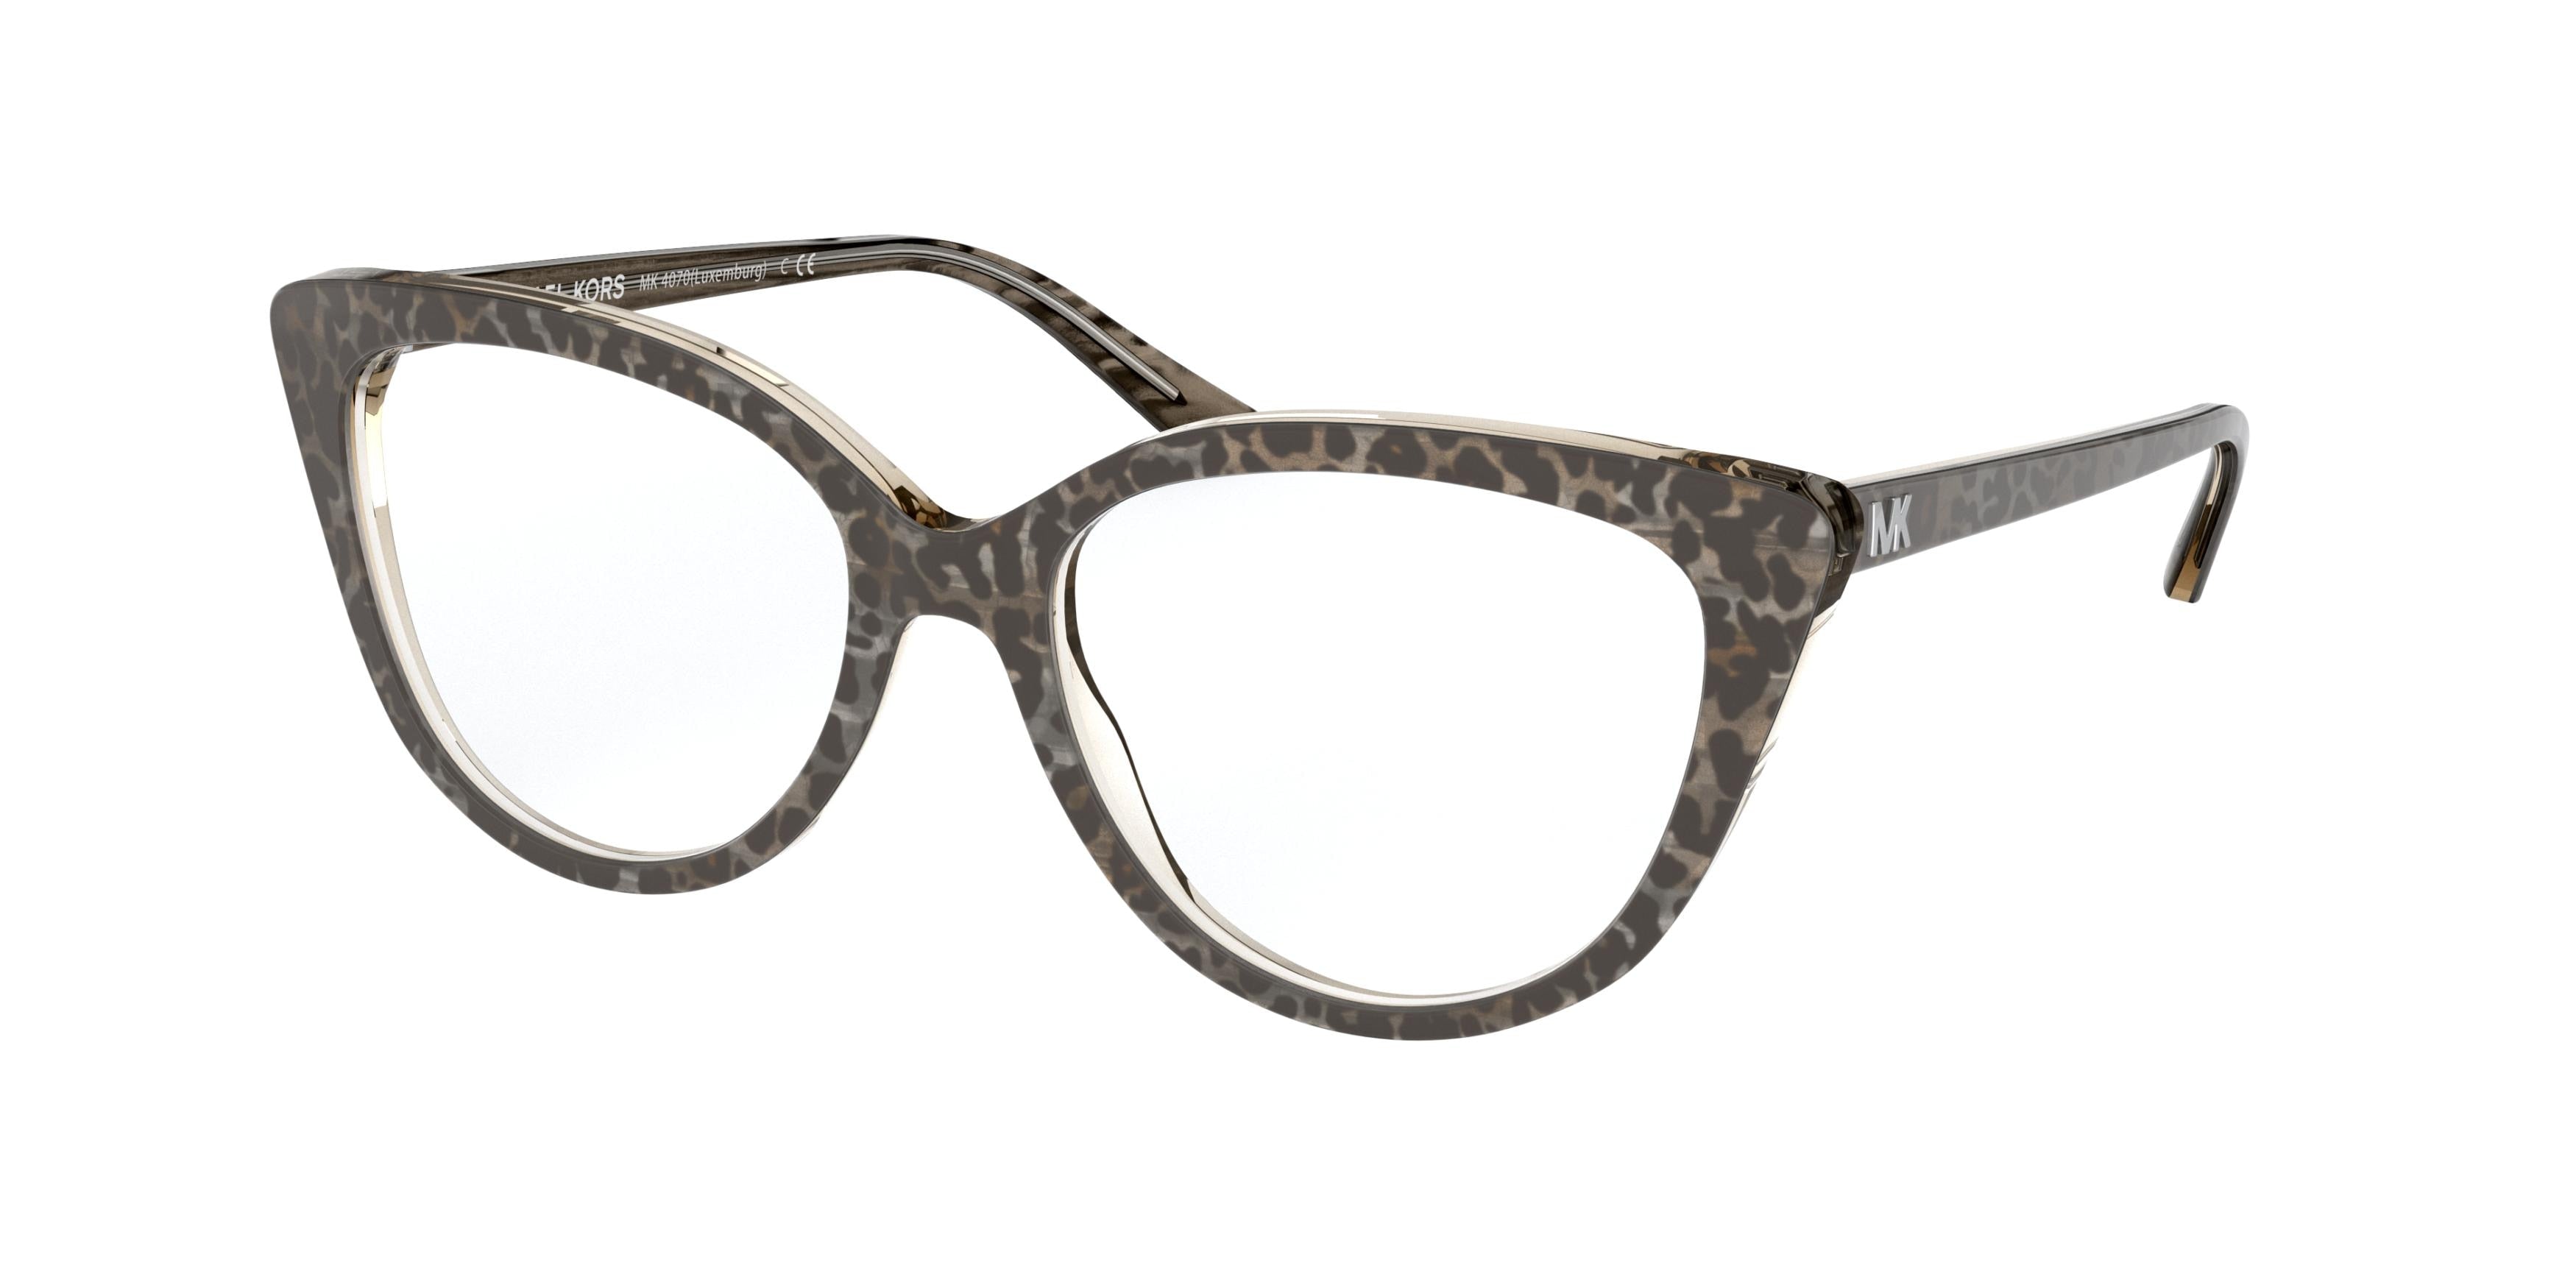 Michael Kors LUXEMBURG MK4070 Cat Eye Eyeglasses